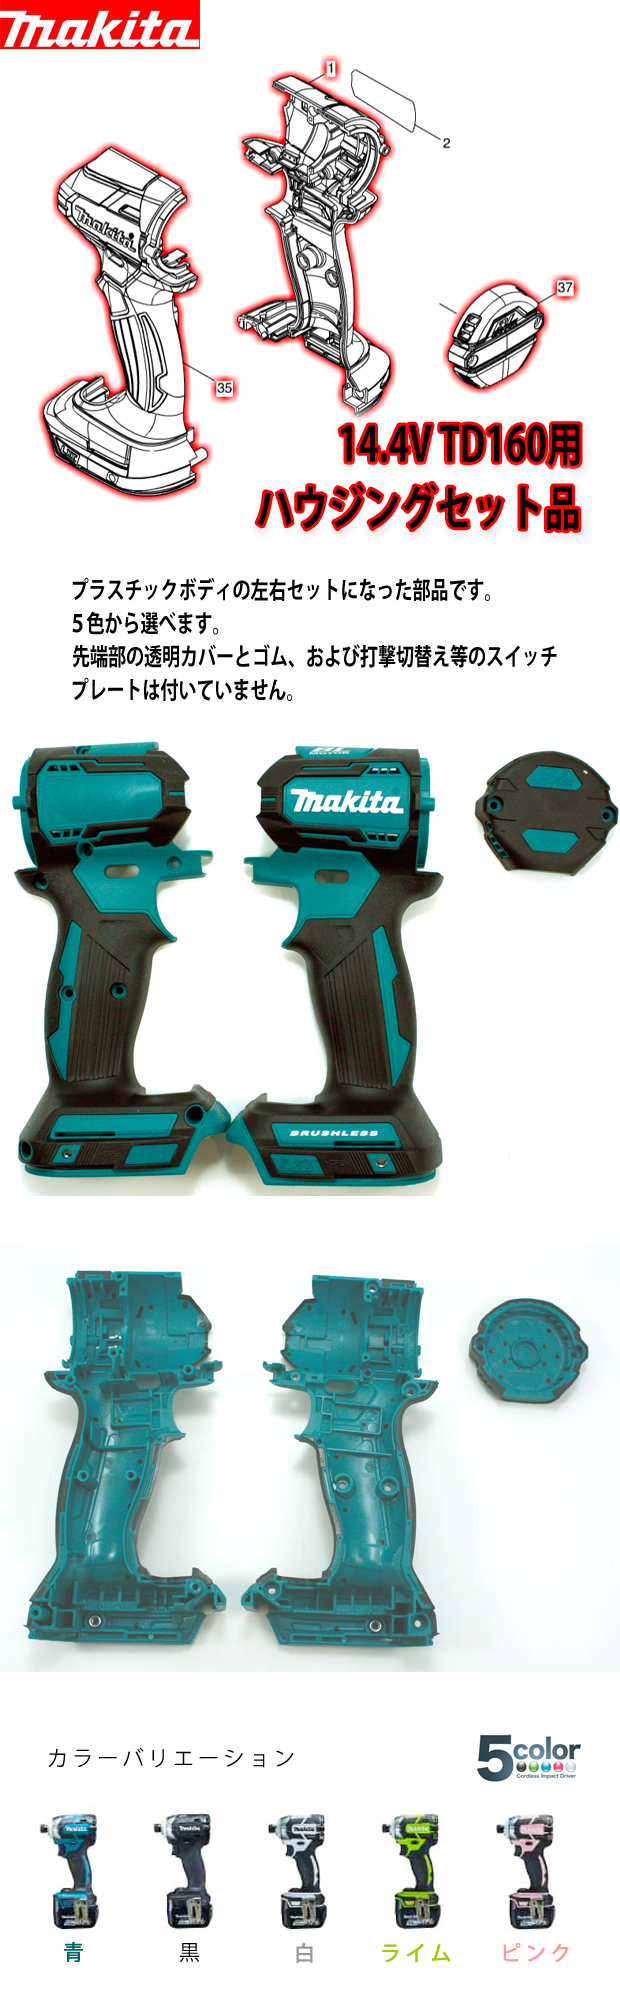 マキタ 14.4V TD160用ハウジング・リヤカバーセット品 電動工具 